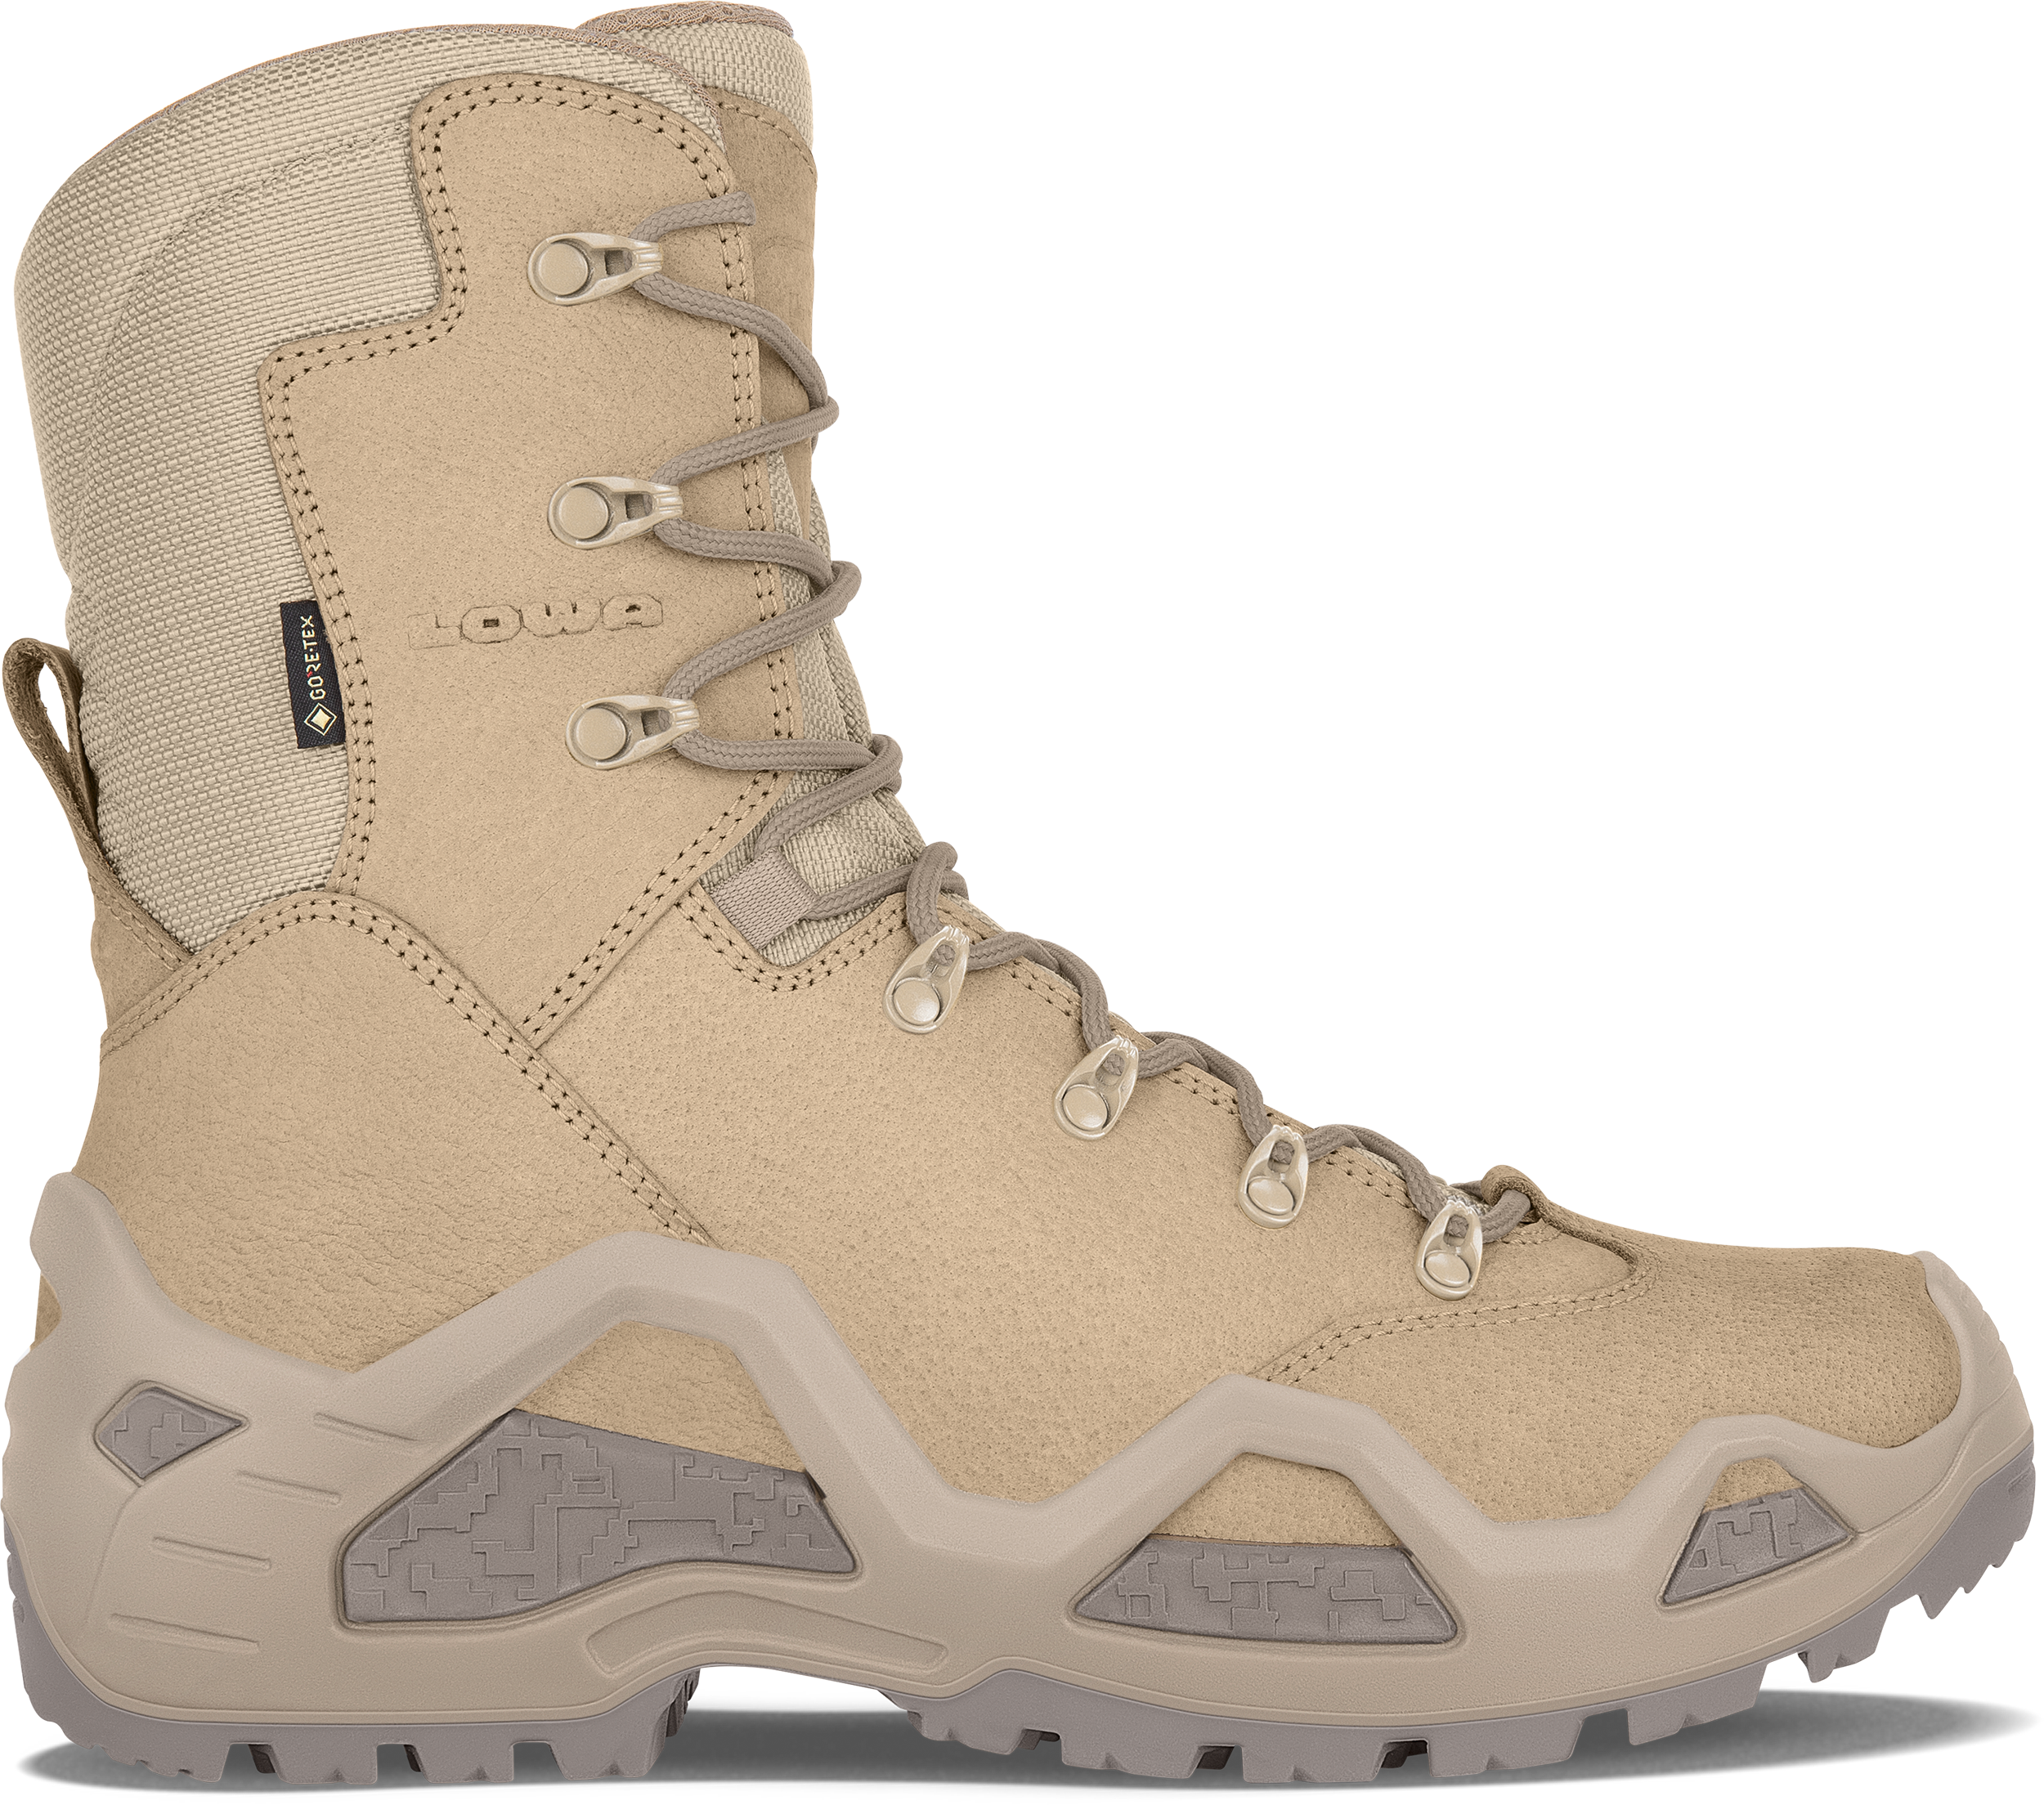 Z-8N GTX C: TASK FORCE: PATROL Schuhe für Männer | LOWA DE